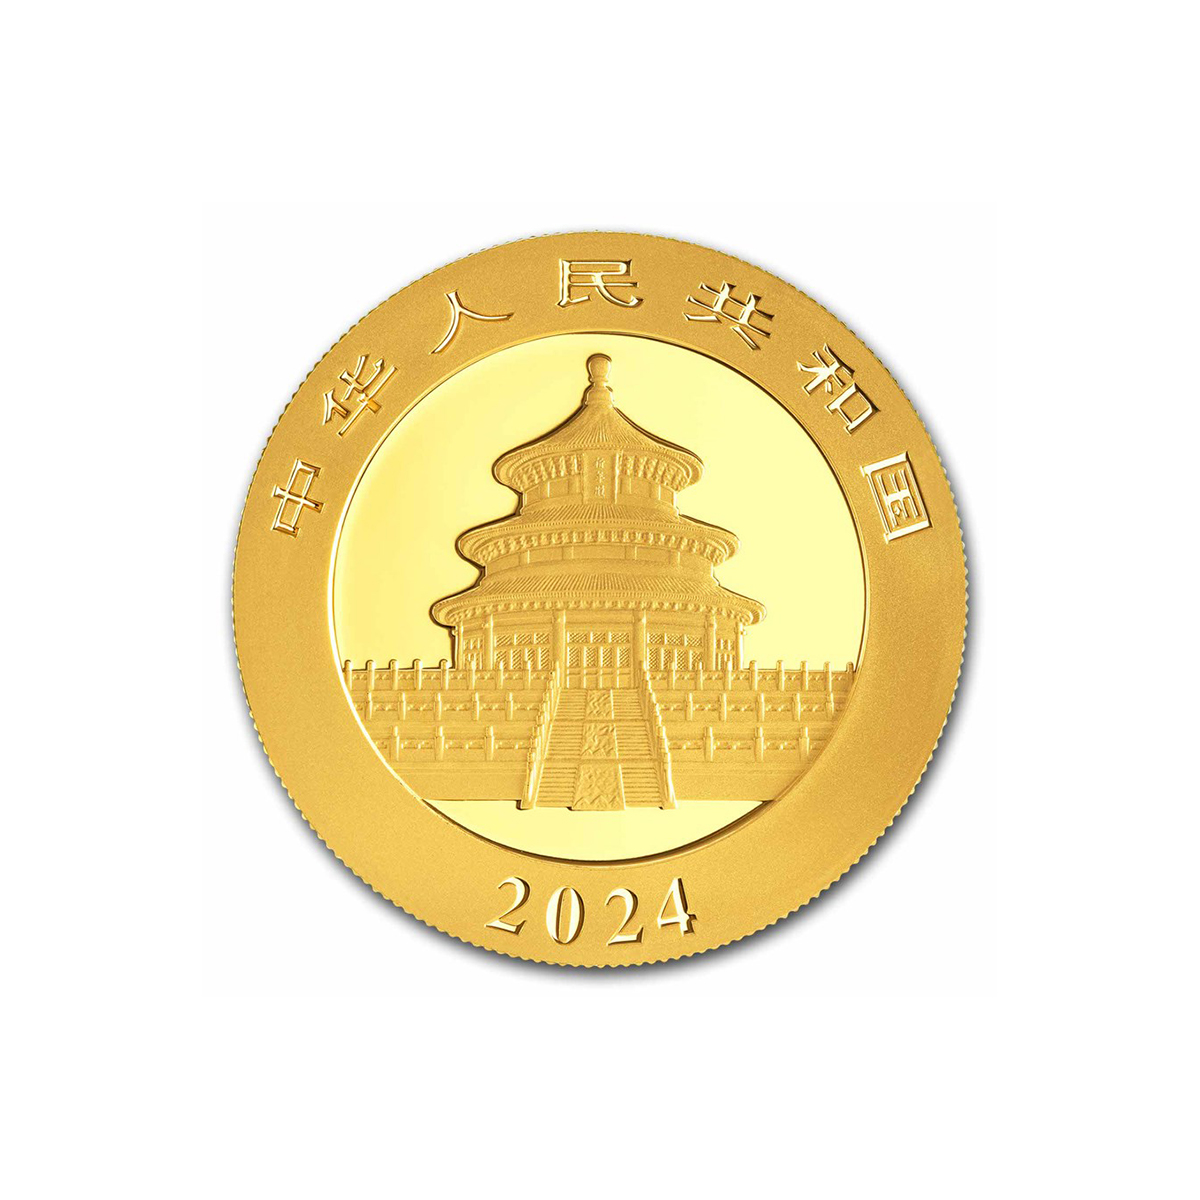 8 grams Gold Coin - Panda 2024